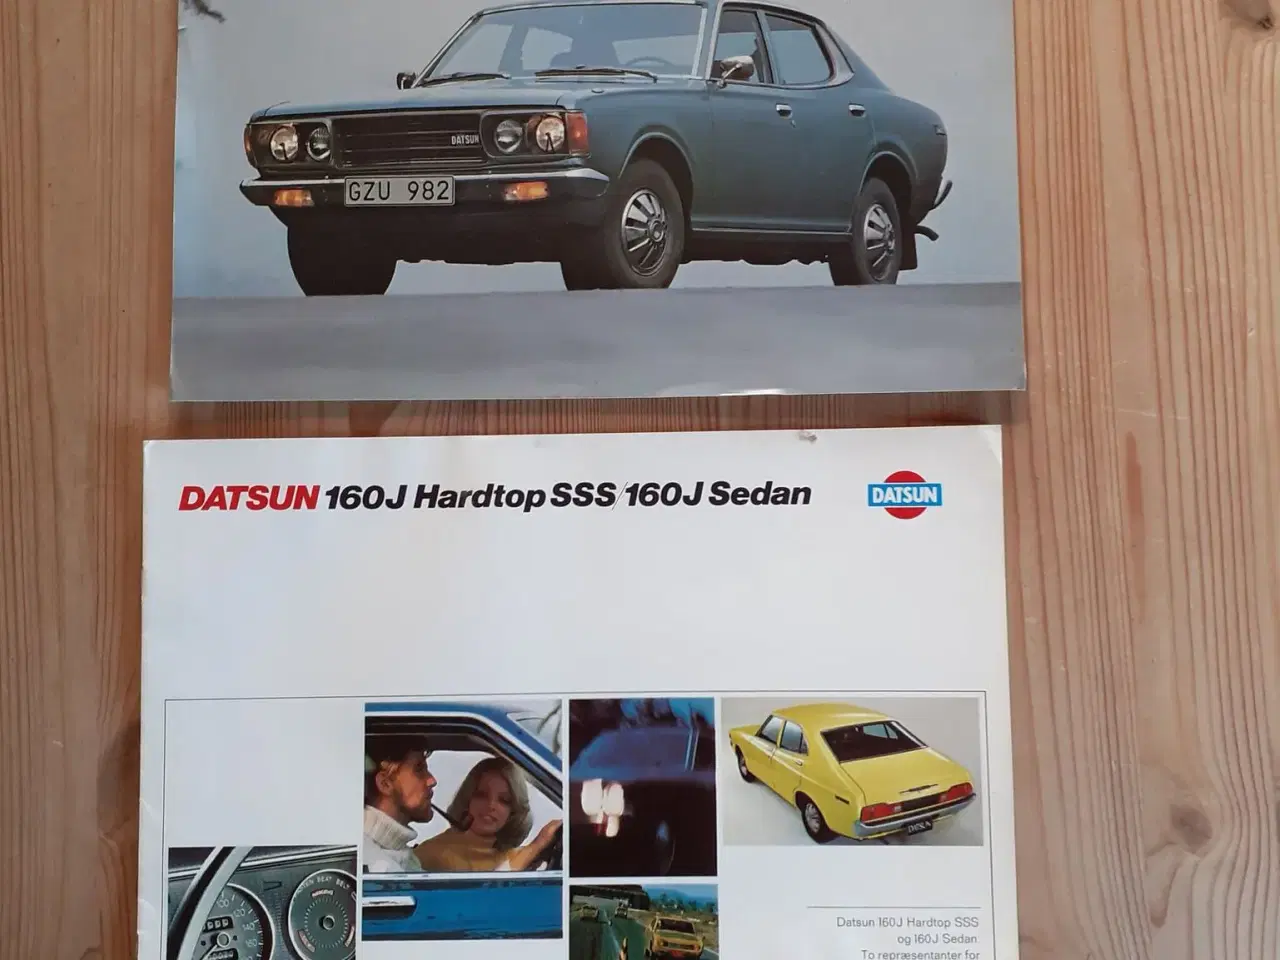 Billede 1 - Datsun salgs brochure